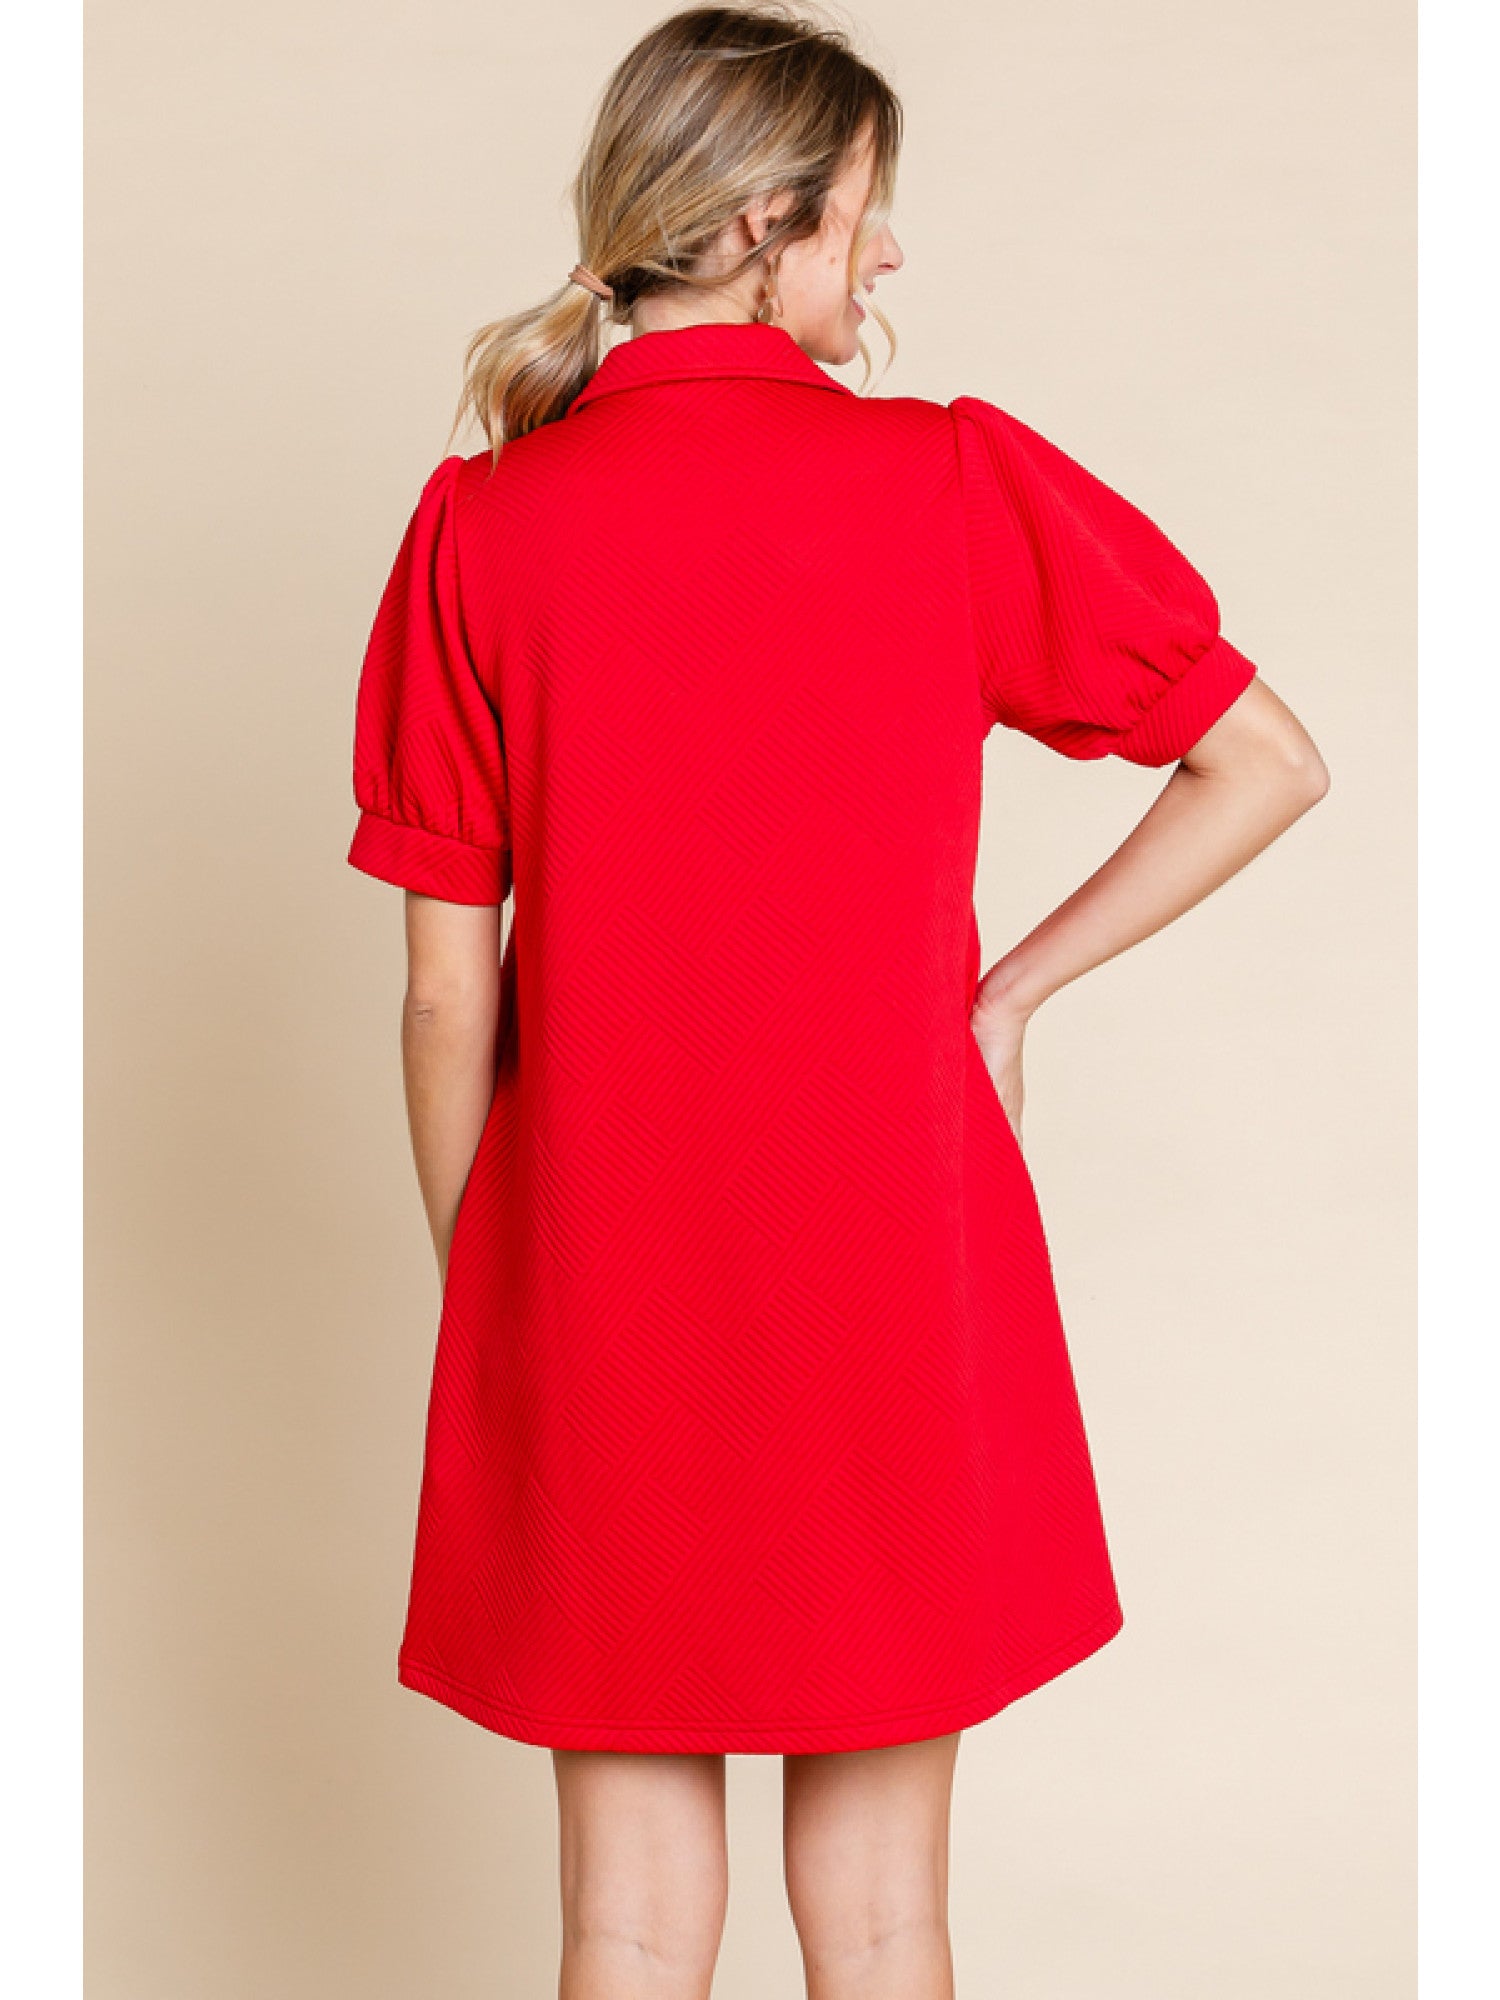 Open Collar Textured Dress Red